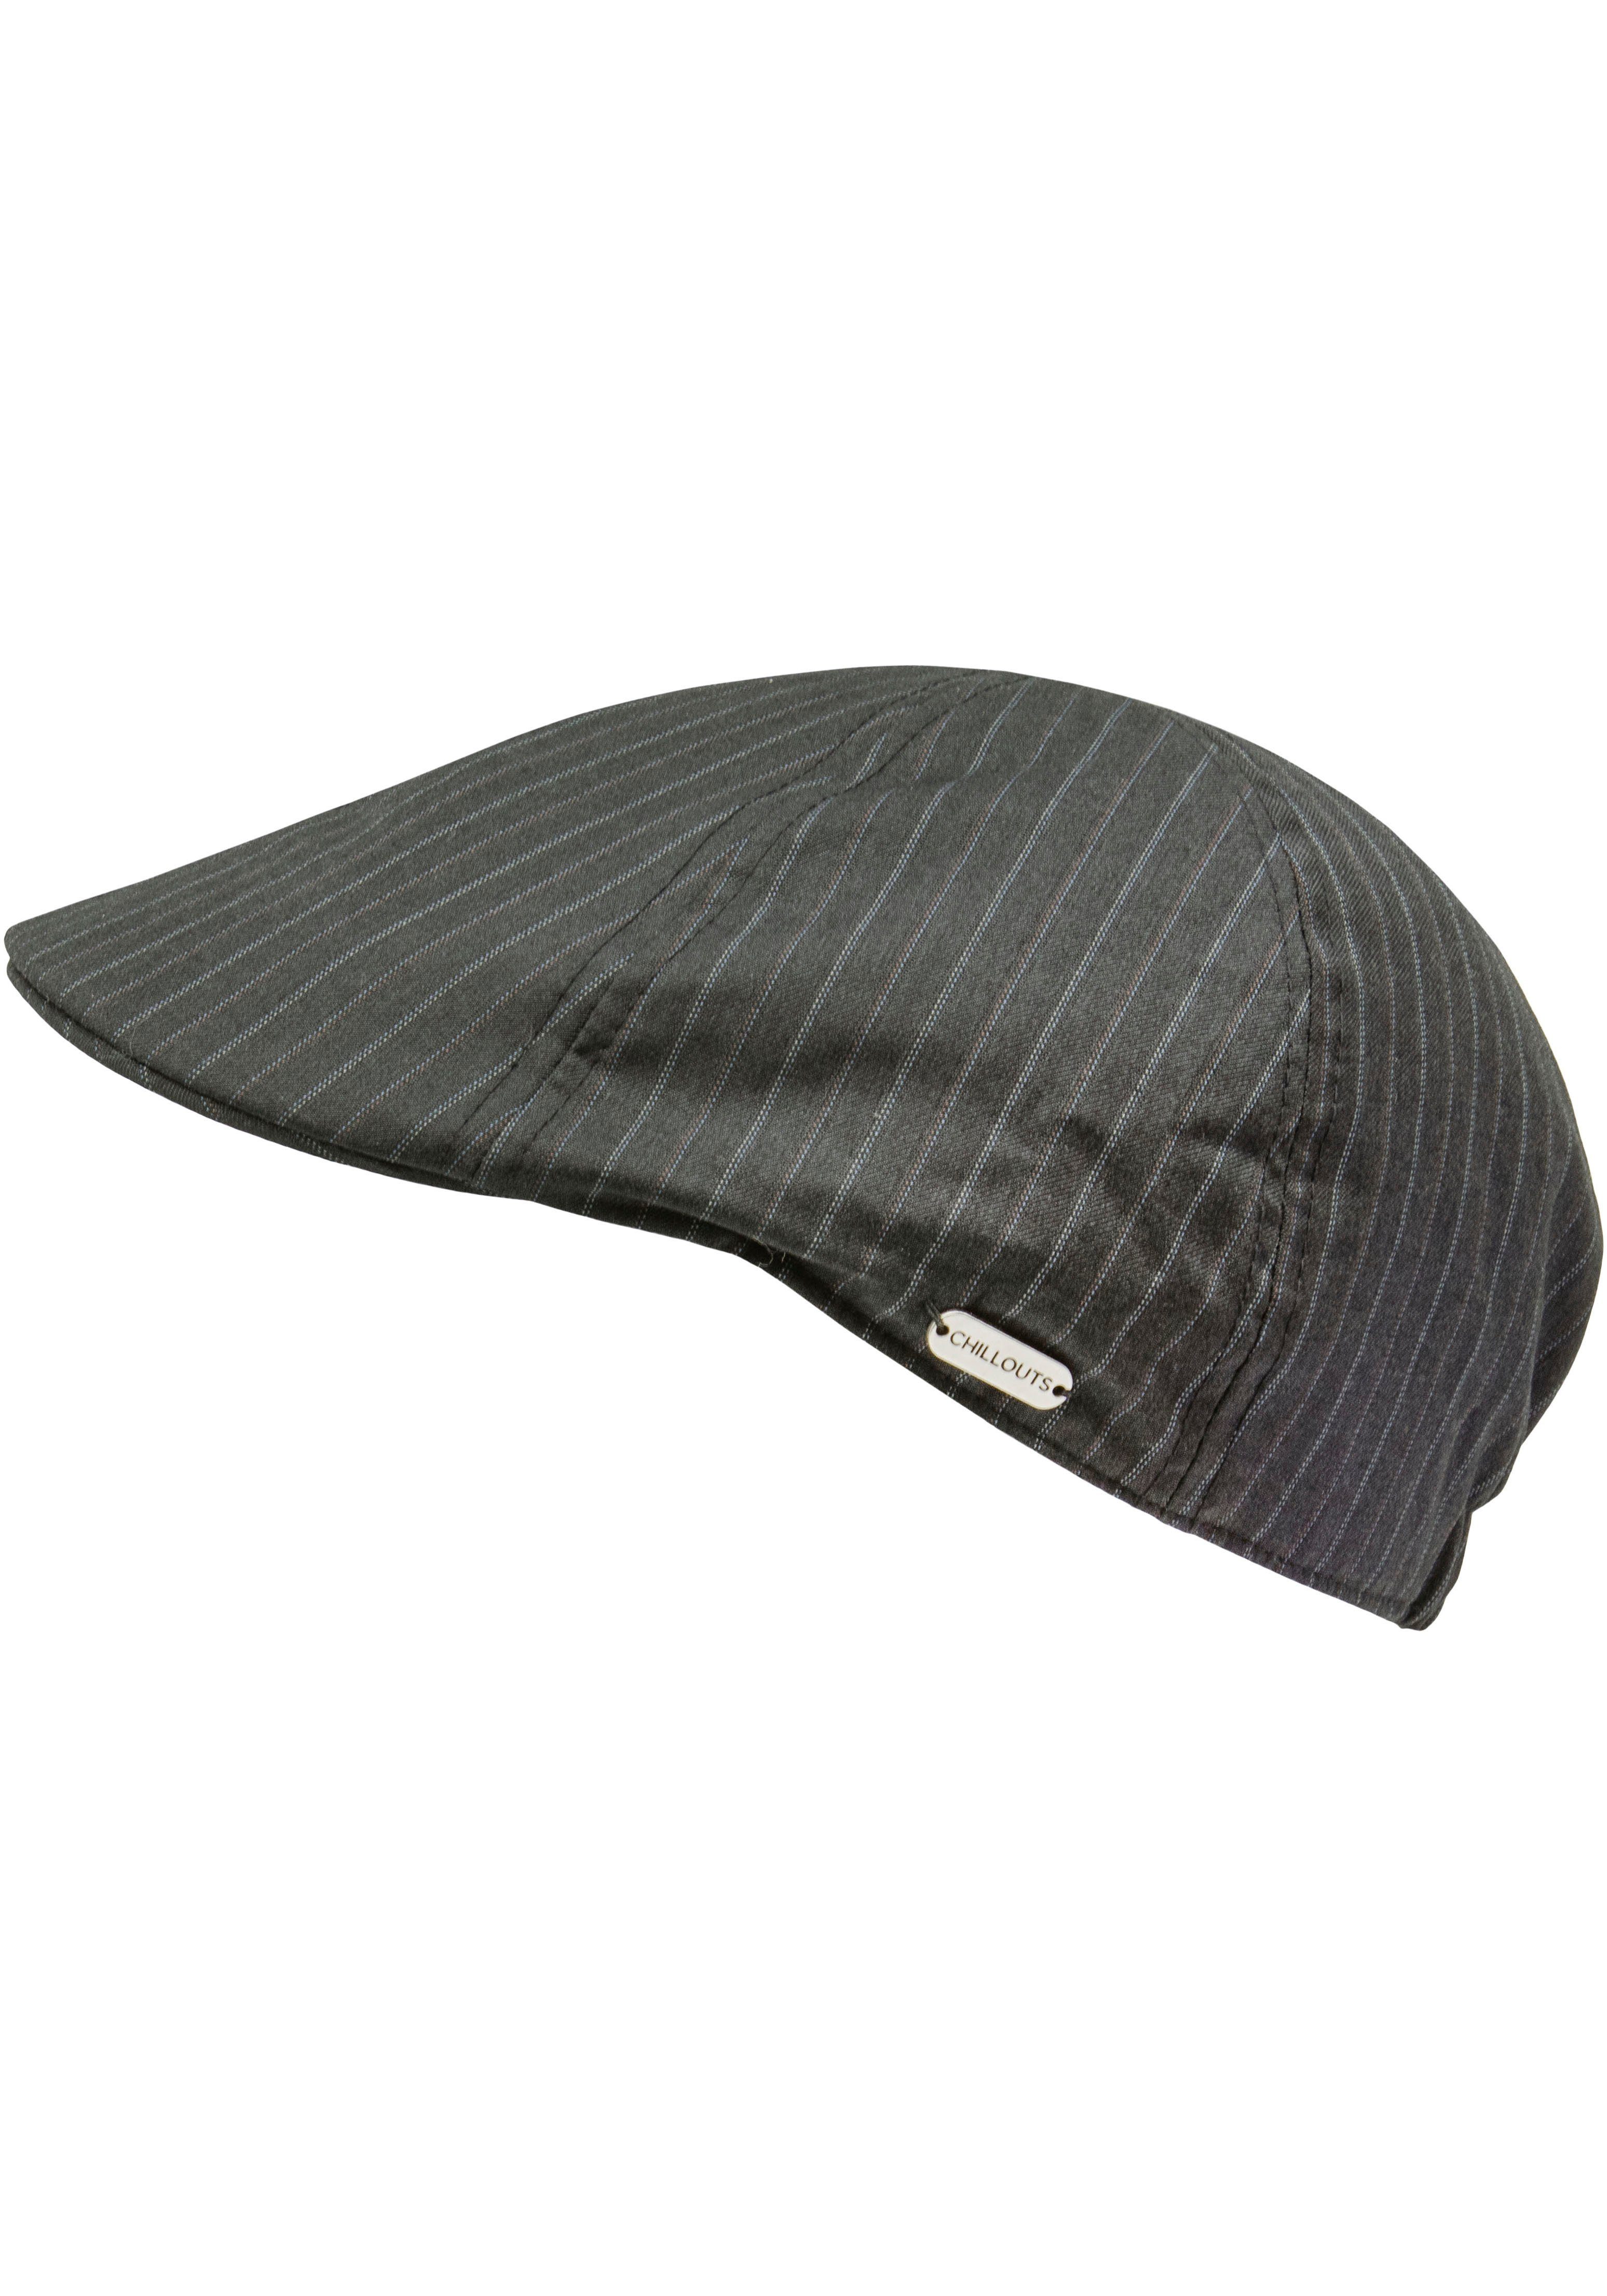 chillouts Schiebermütze Alicante Hat mit Gummizug hinten, sorgt für eine  optimale Passform | Baseball Caps